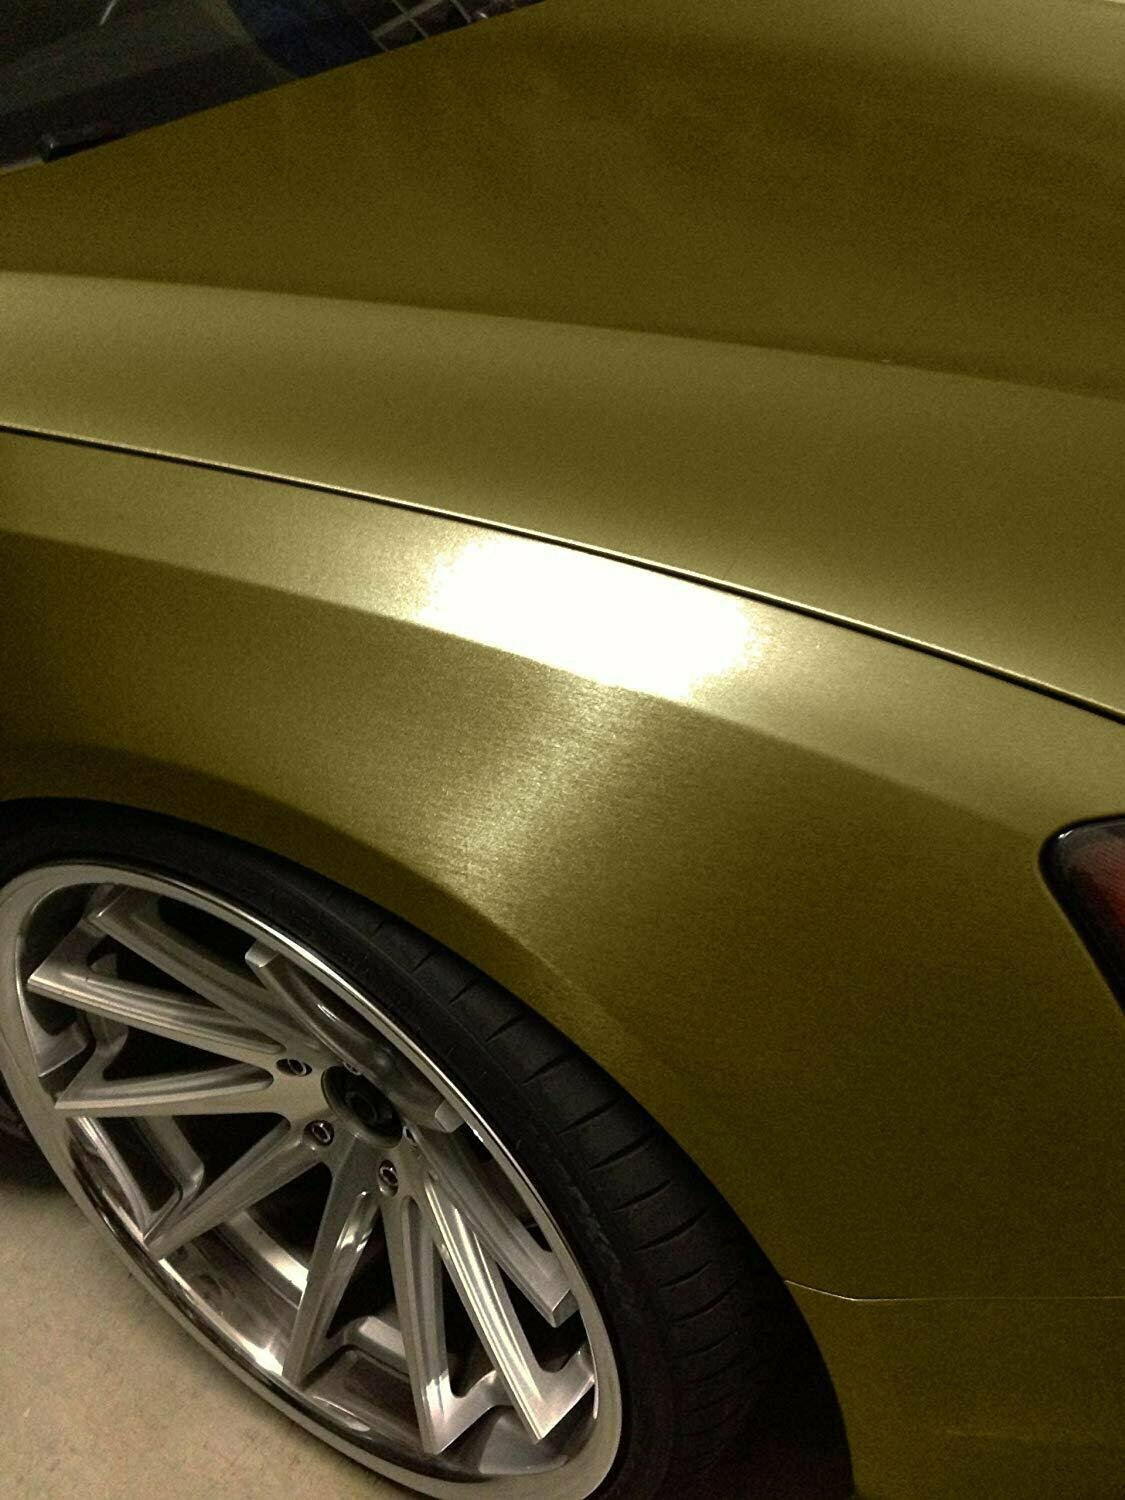 SunGrass / Виниловая пленка золотая с эффектом шлифованного алюминия 152 х 70 см / Виниловая автомобильная самоклеющаяся пленка для авто